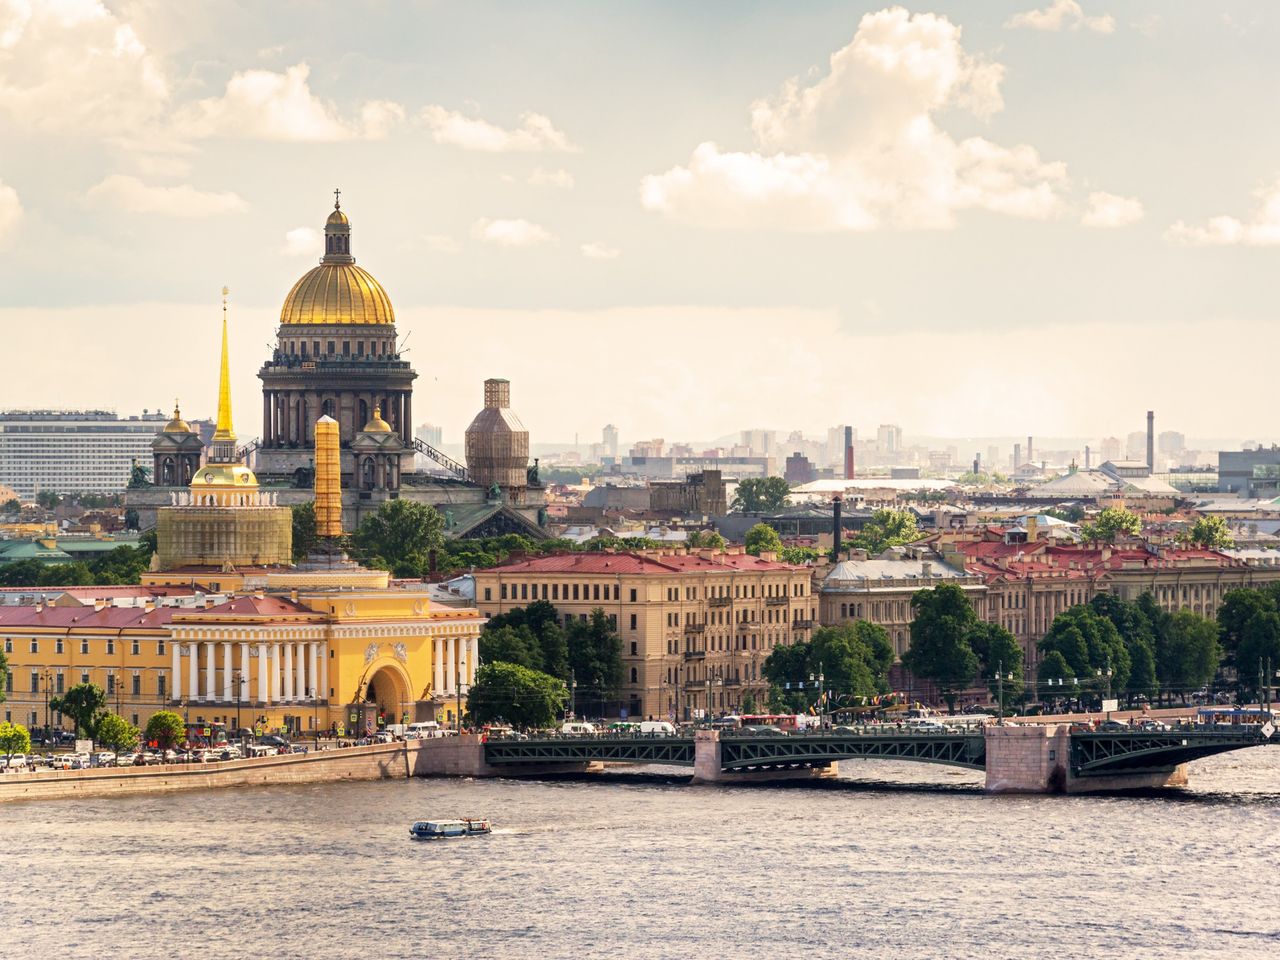 Обзорная по Петербургу: главные локации | Цена 10000₽, отзывы, описание экскурсии